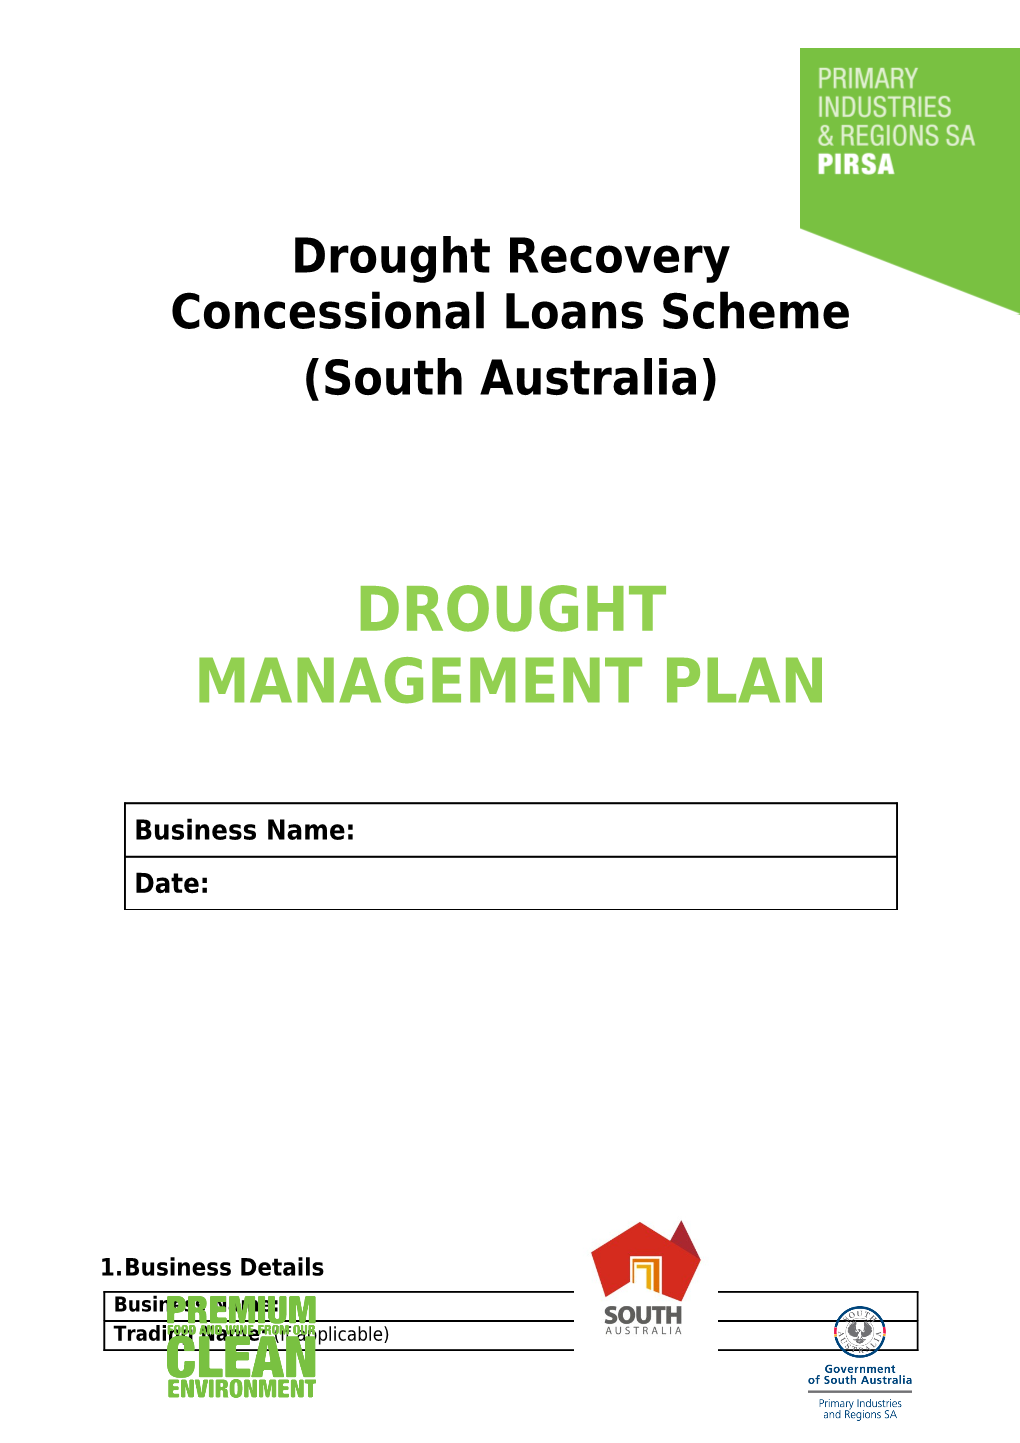 Drought Management Plan